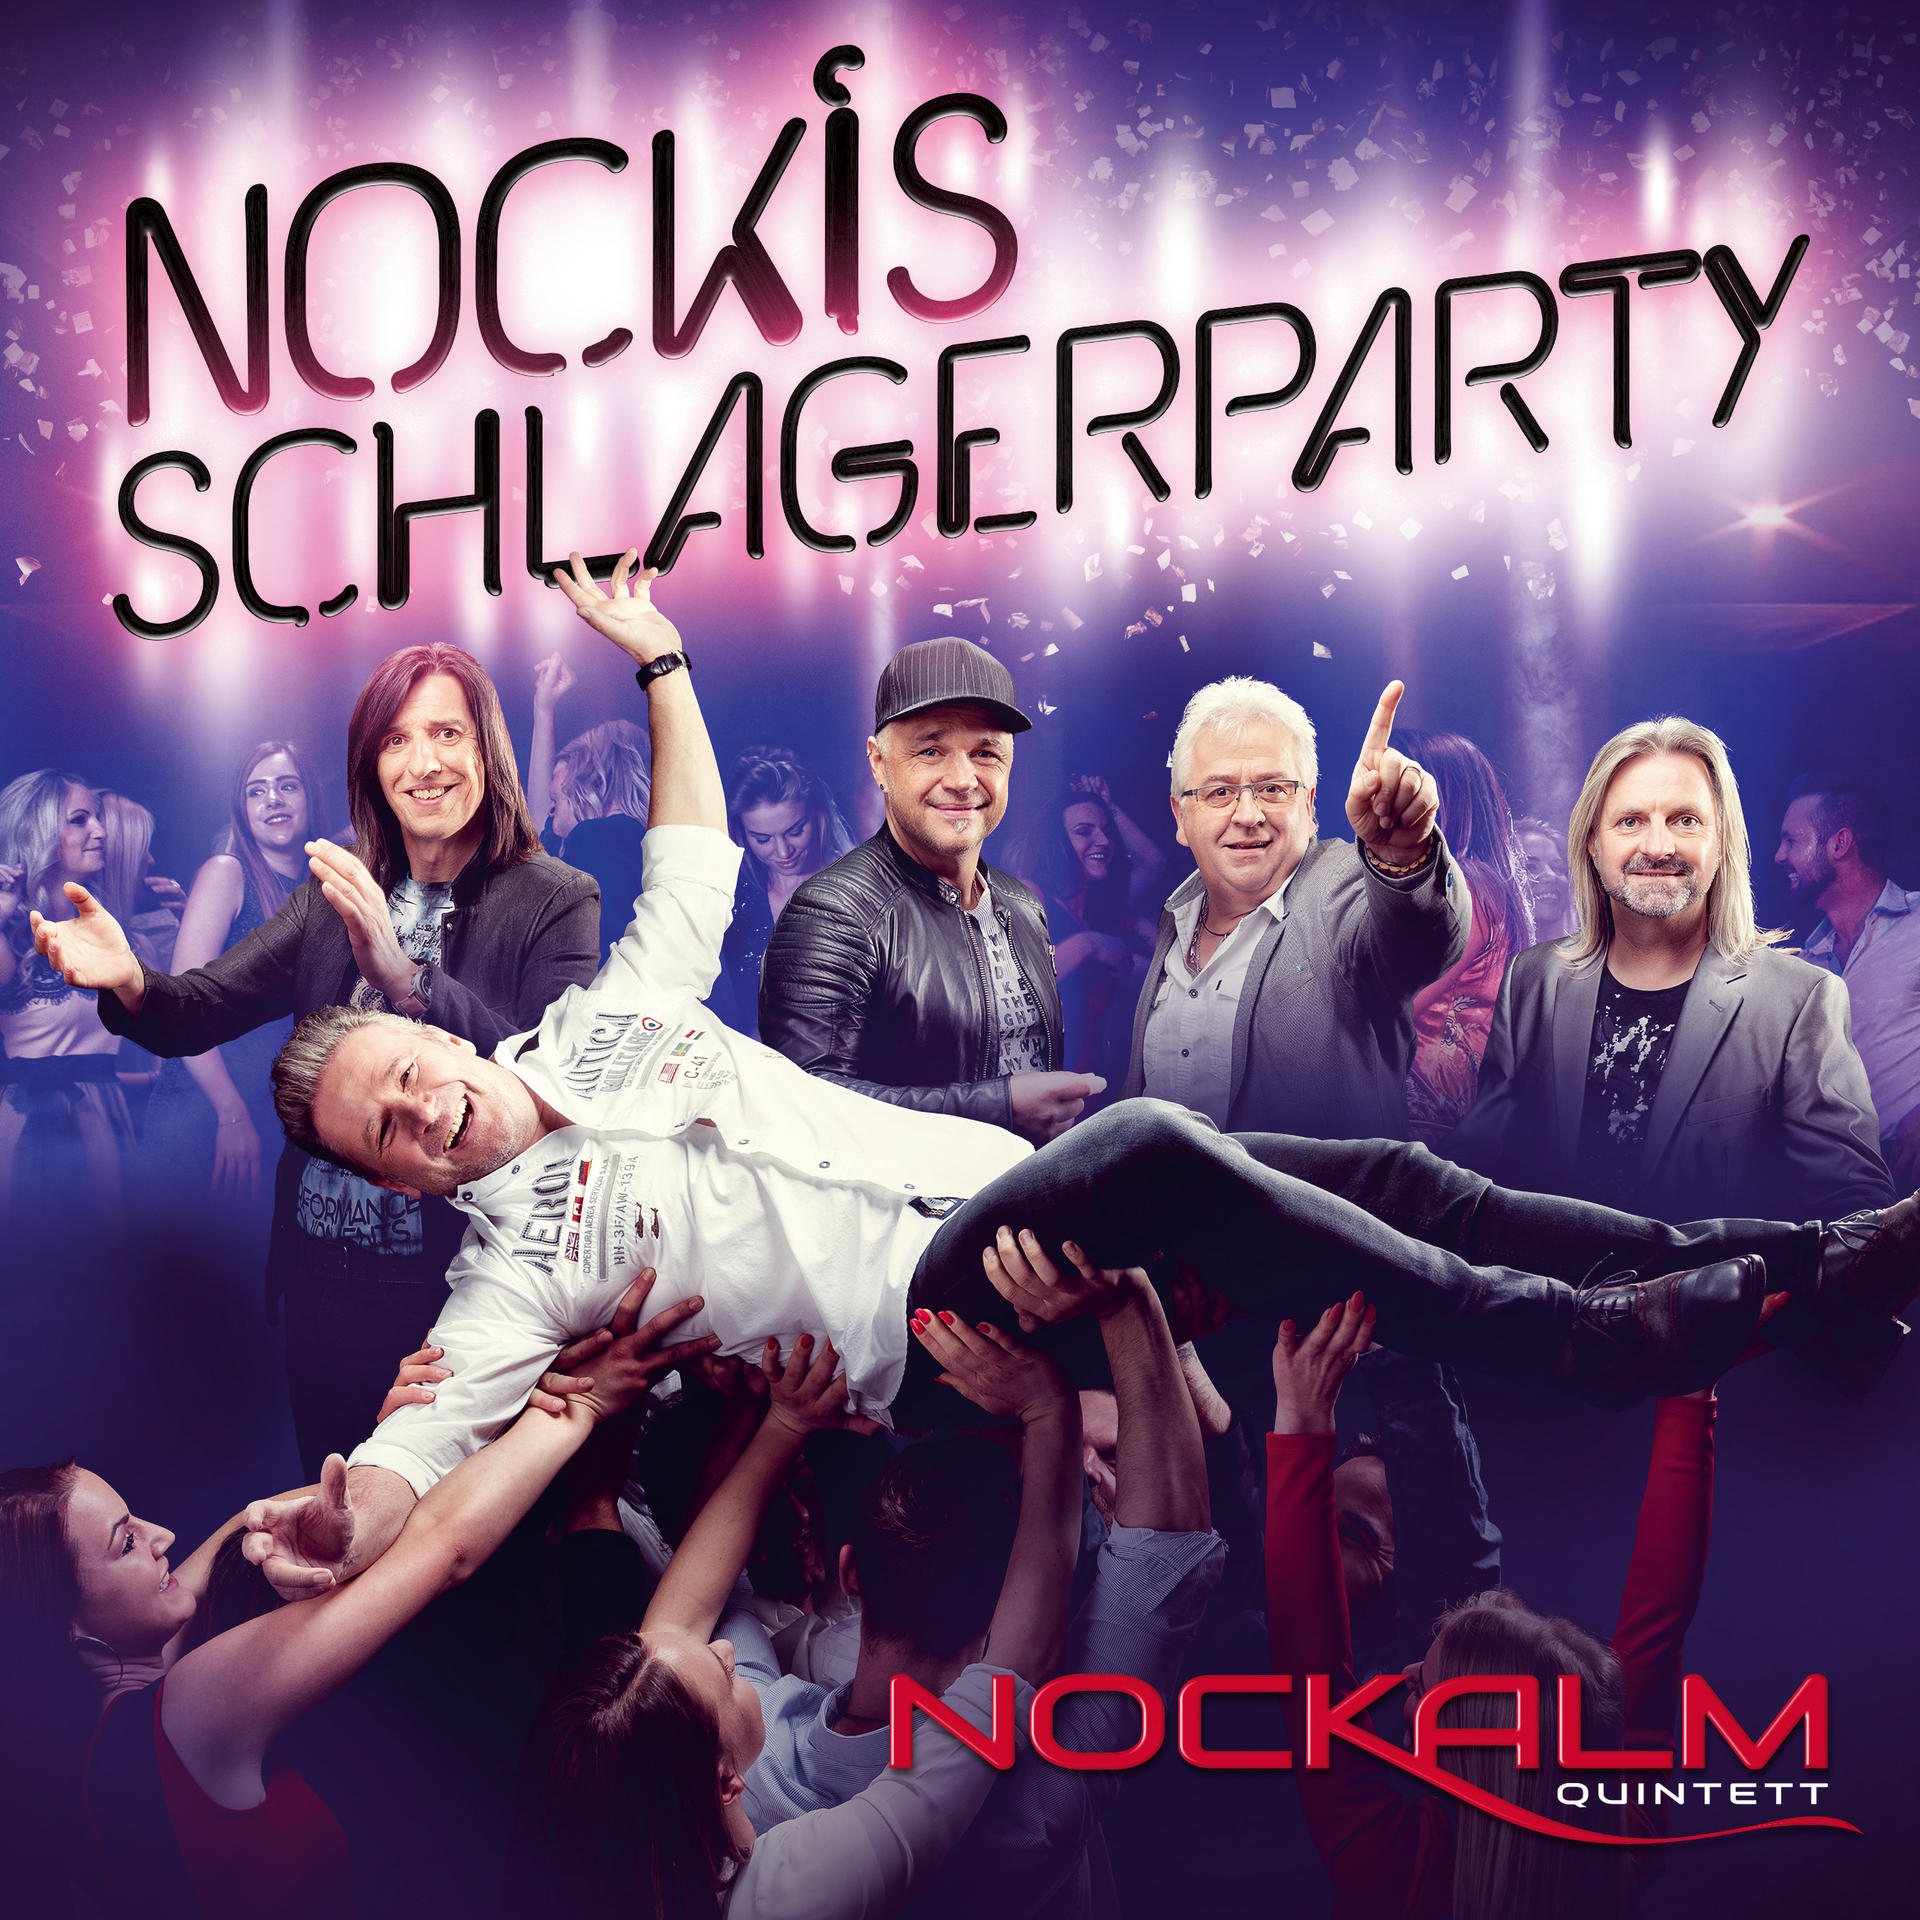 Nockis - Quintett (CD) - Nockalm Schlagerparty